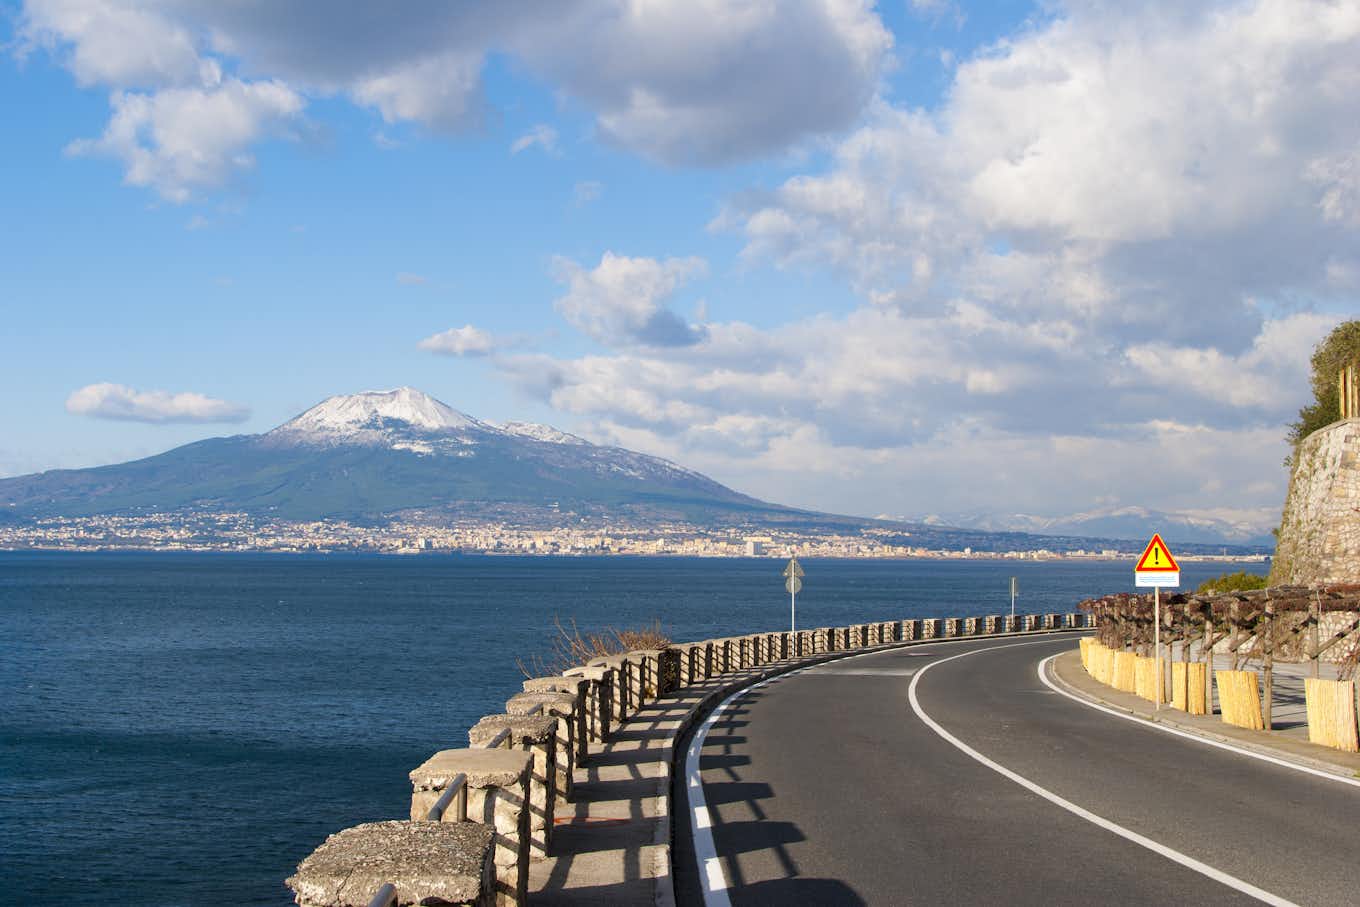 View of the Vesuvio